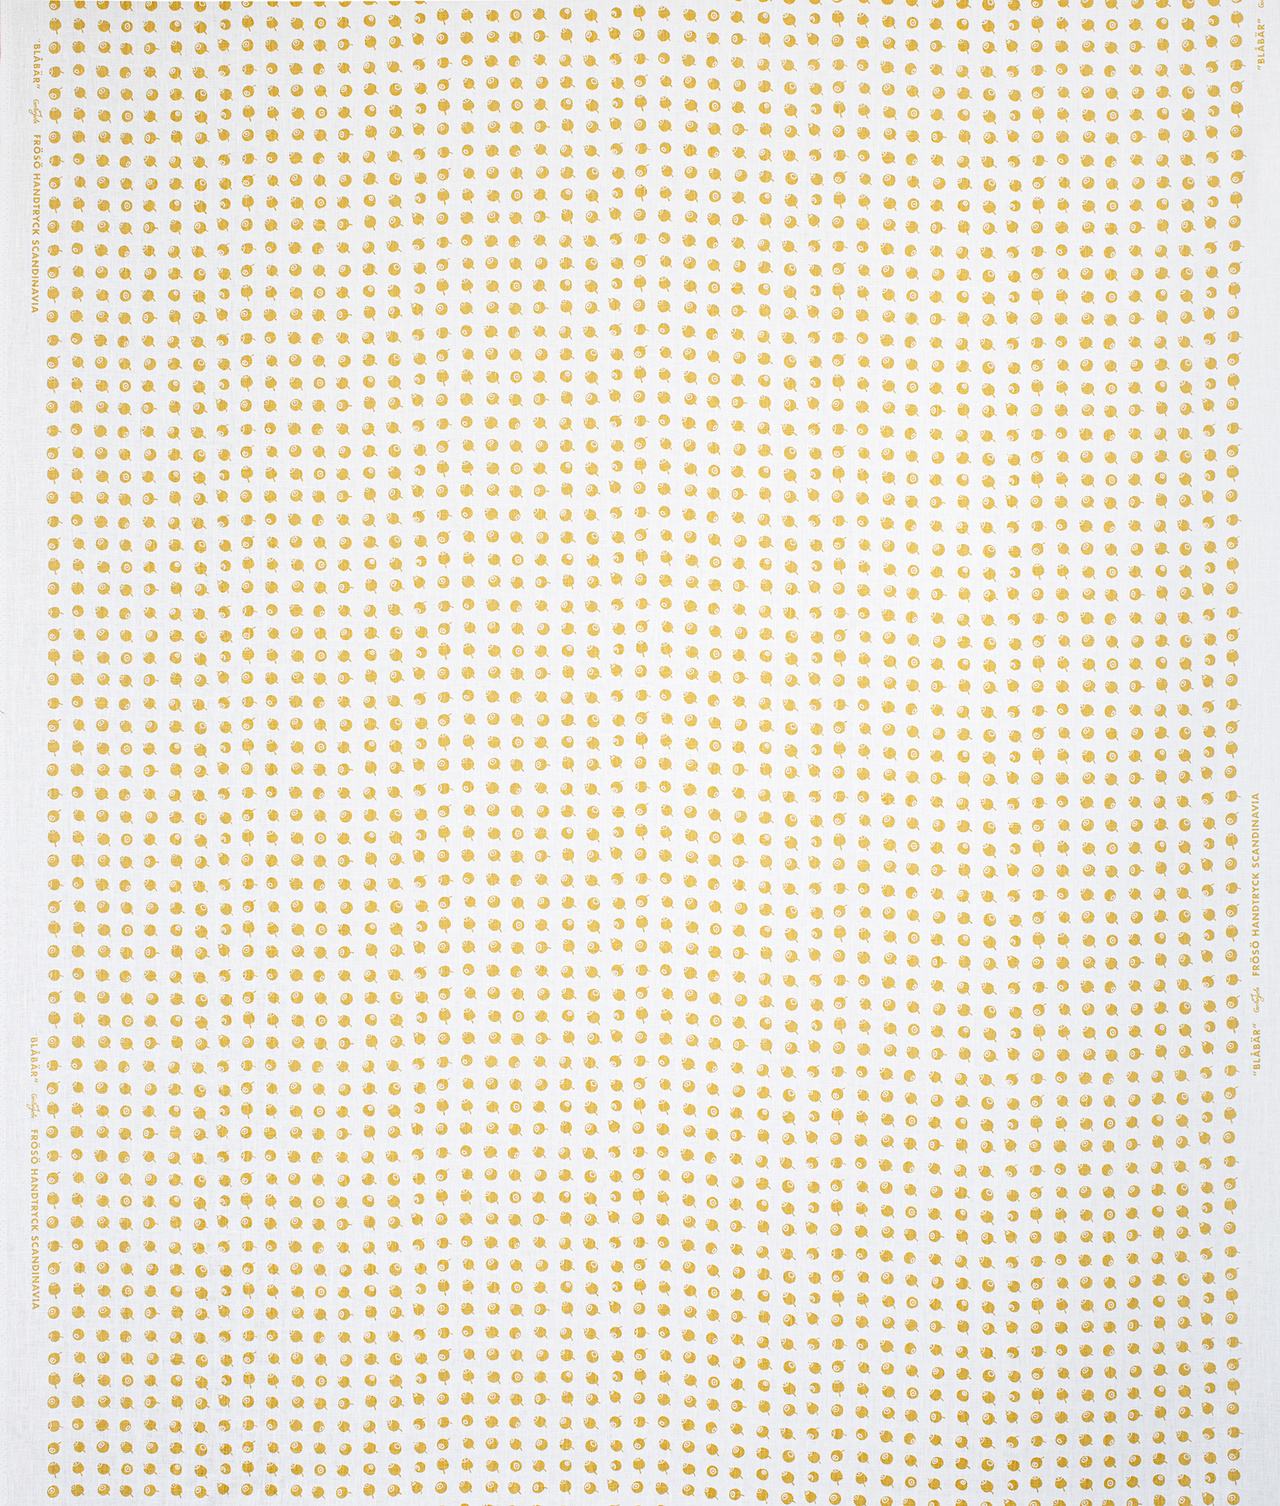 Cotton fabric ”Blåbär” Mustard